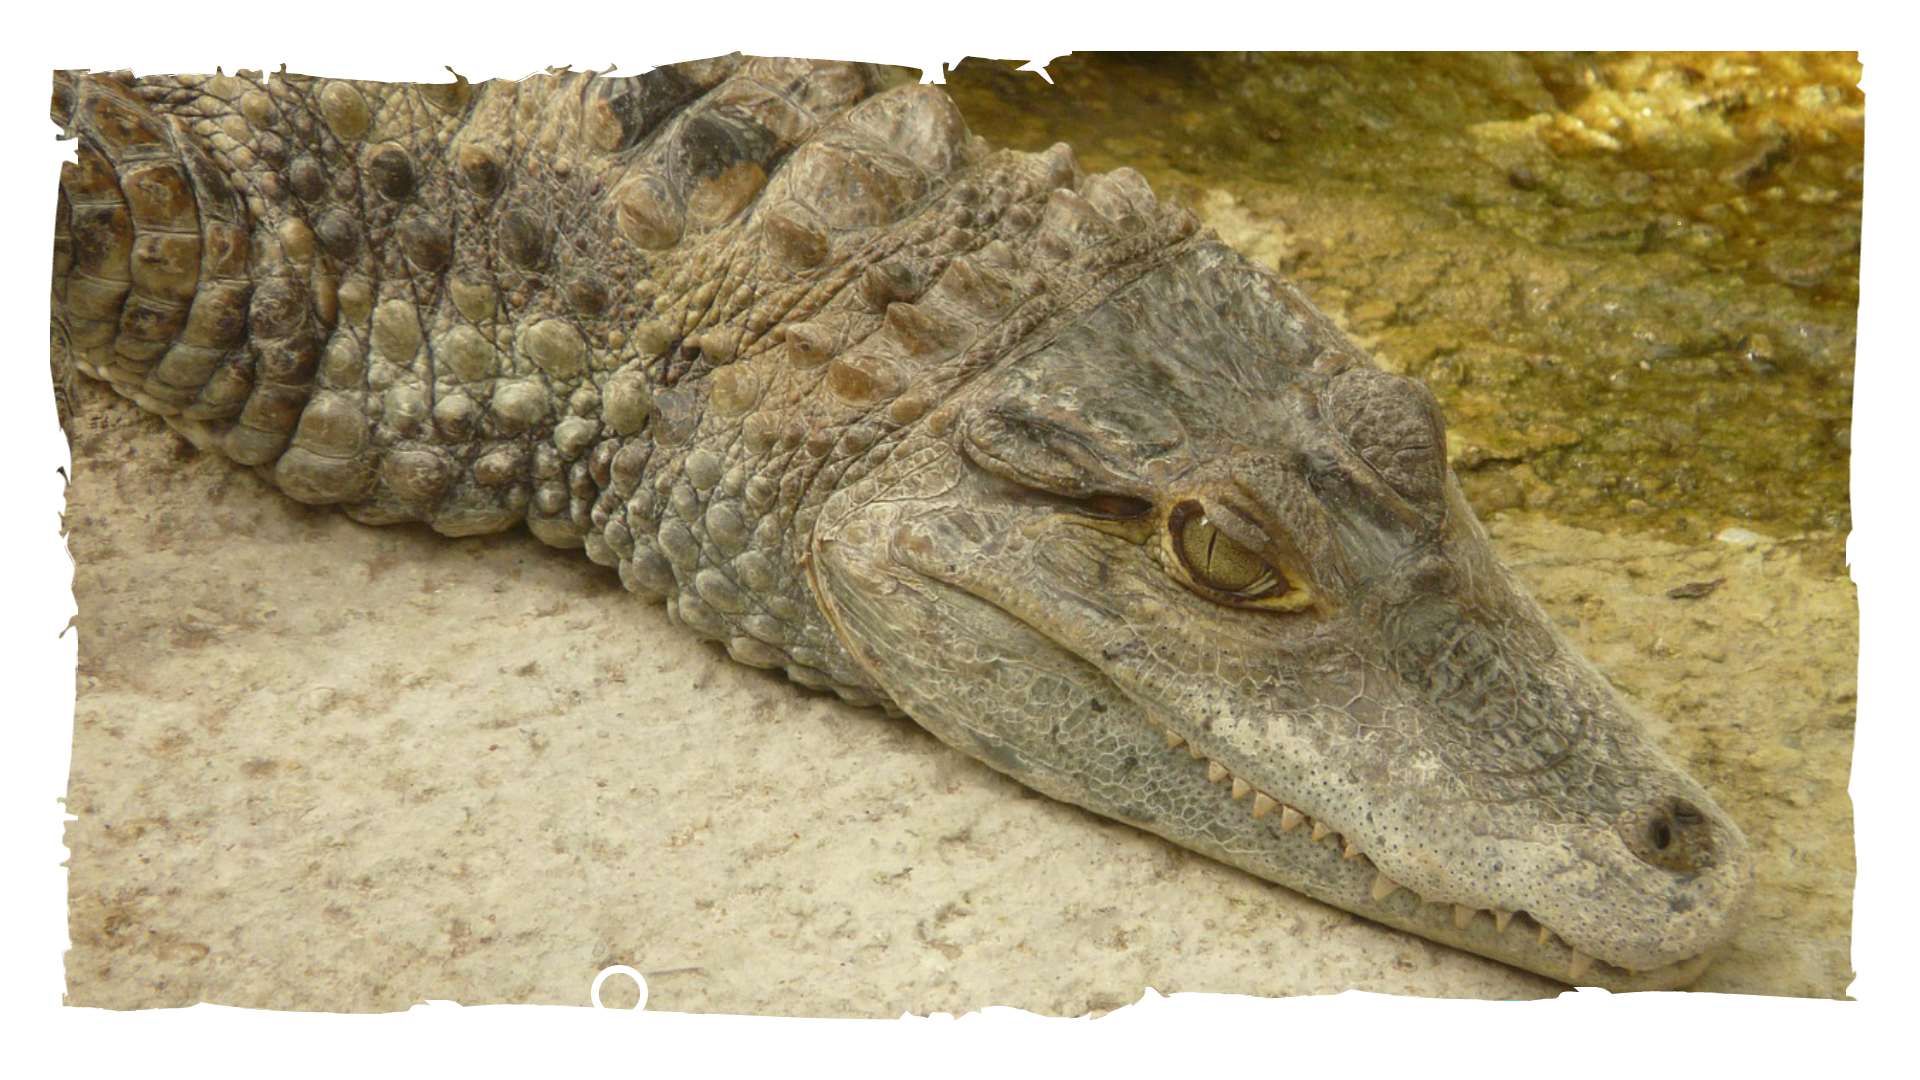 Un reptil en el agua, ¿caimán o cocodrilo? — Hive